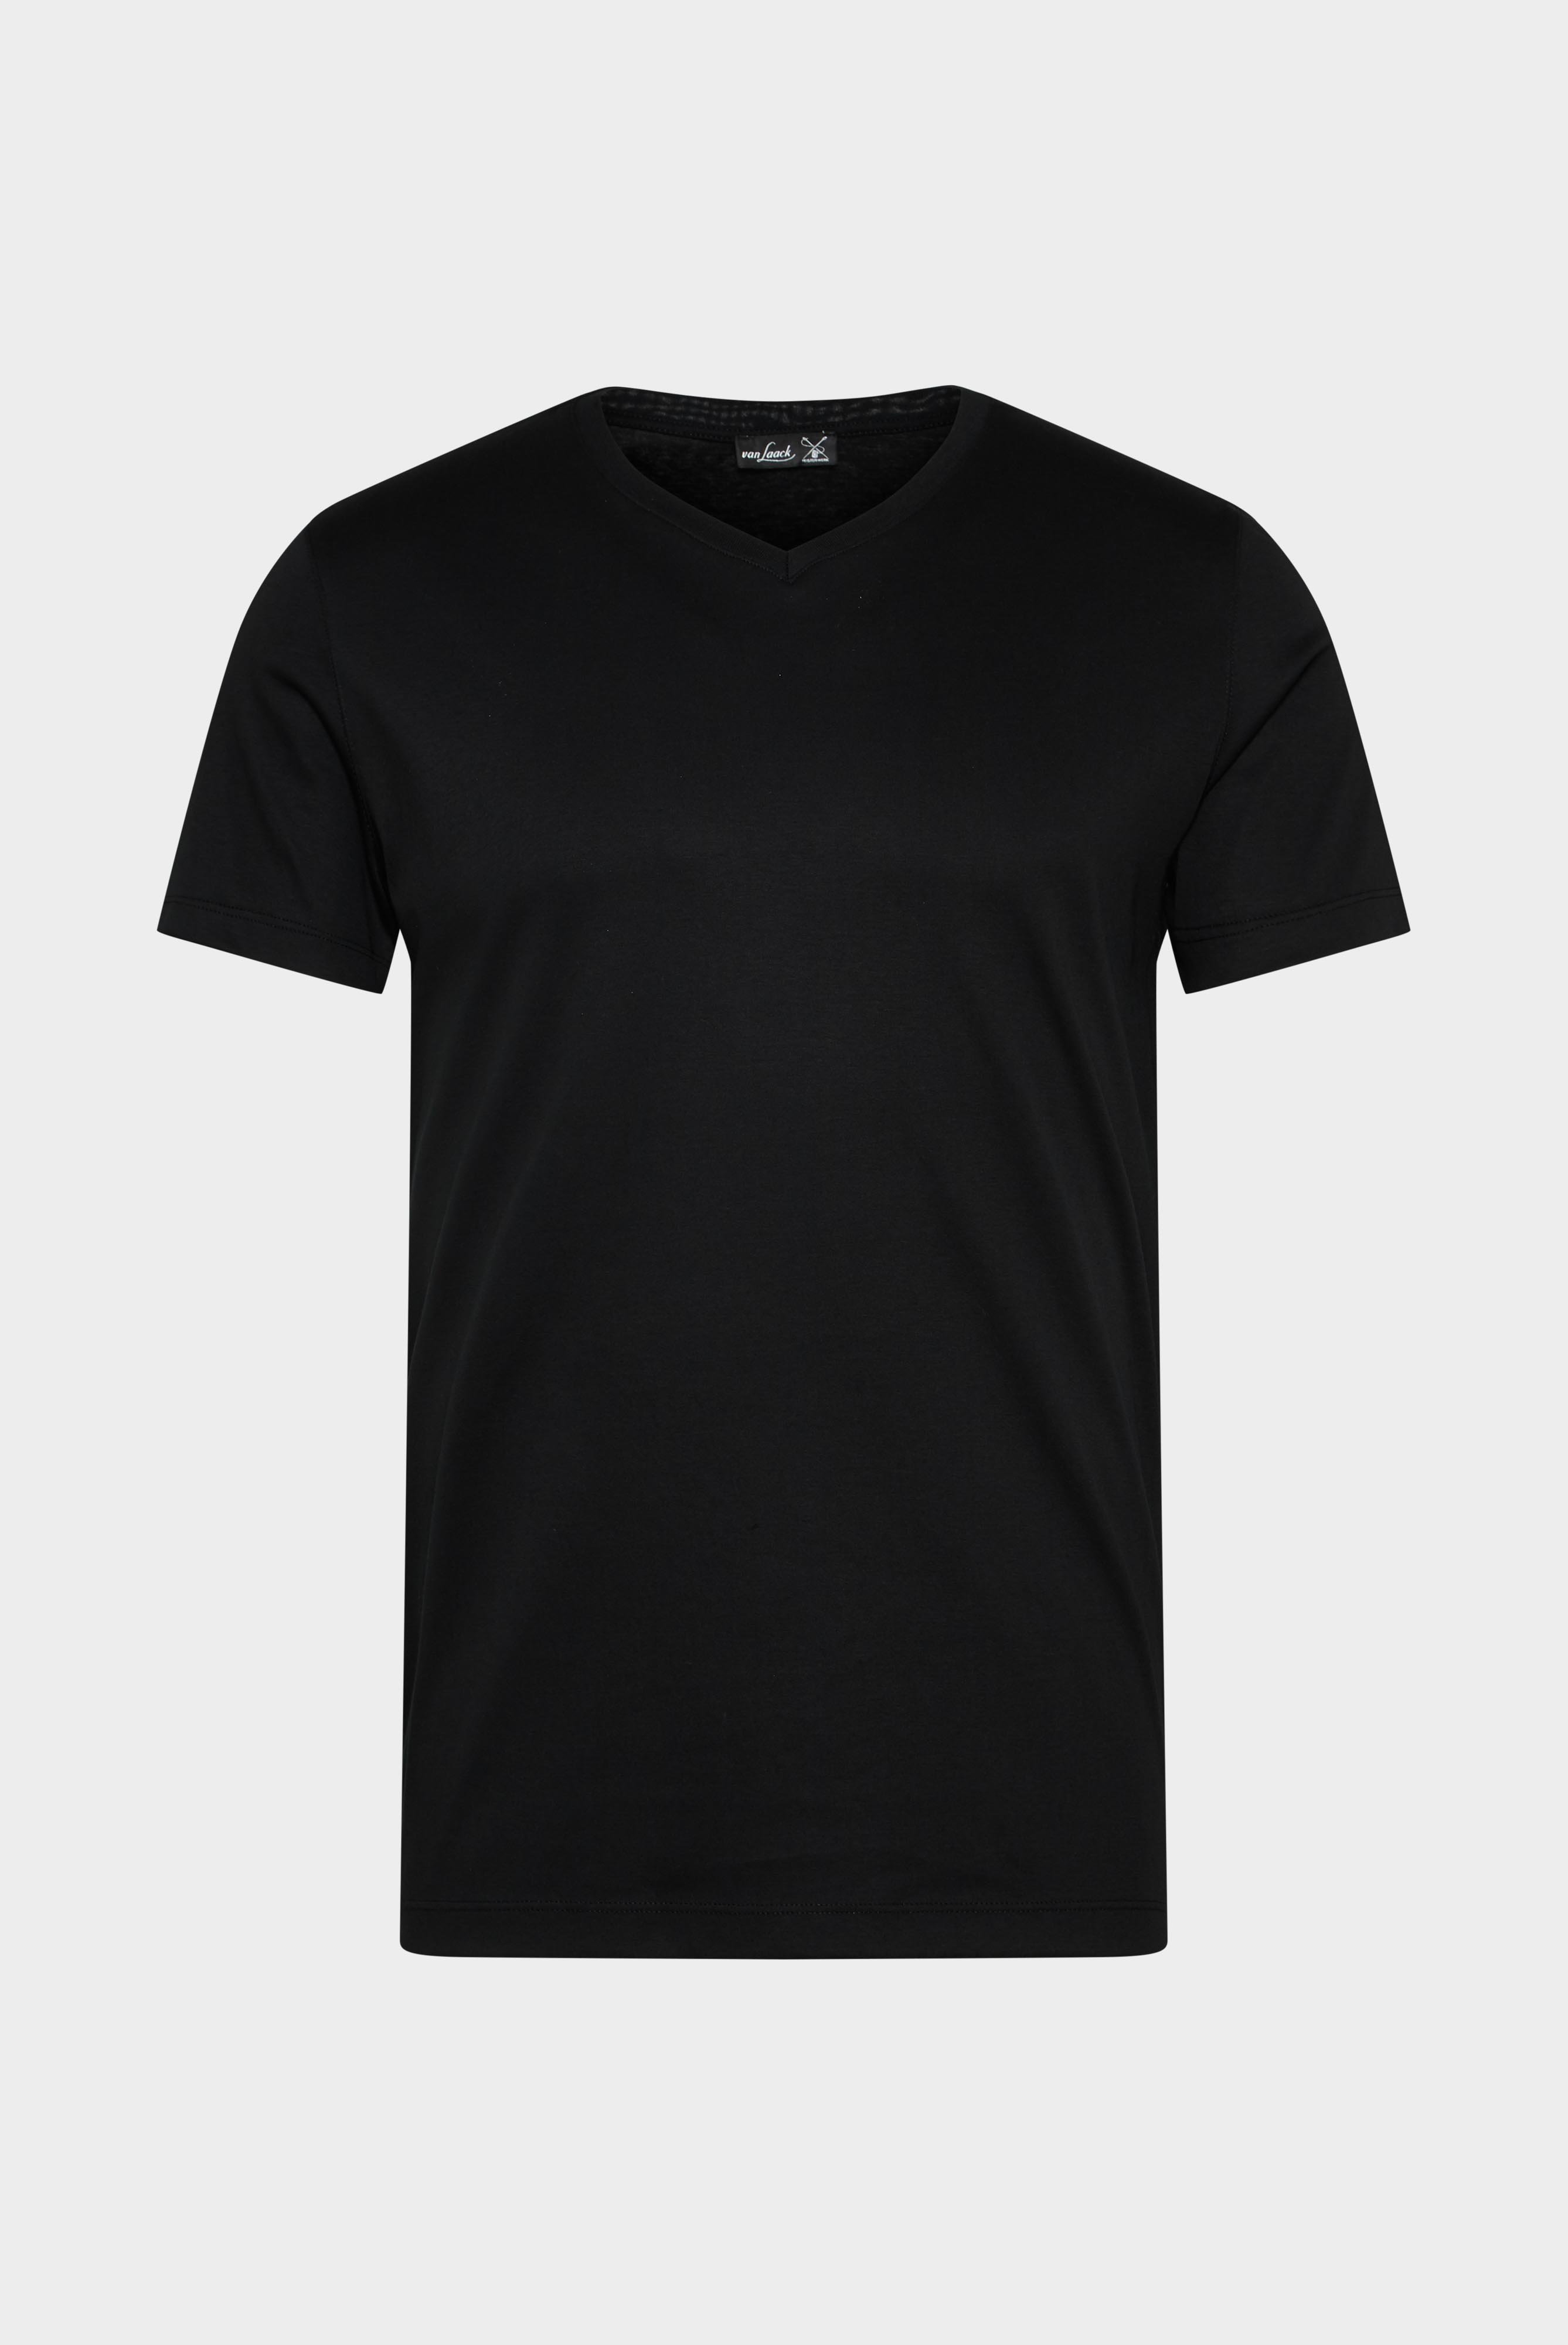 T-Shirts+V-Ausschnitt Jersey T-Shirt Slim Fit+20.1715.UX.180031.099.S